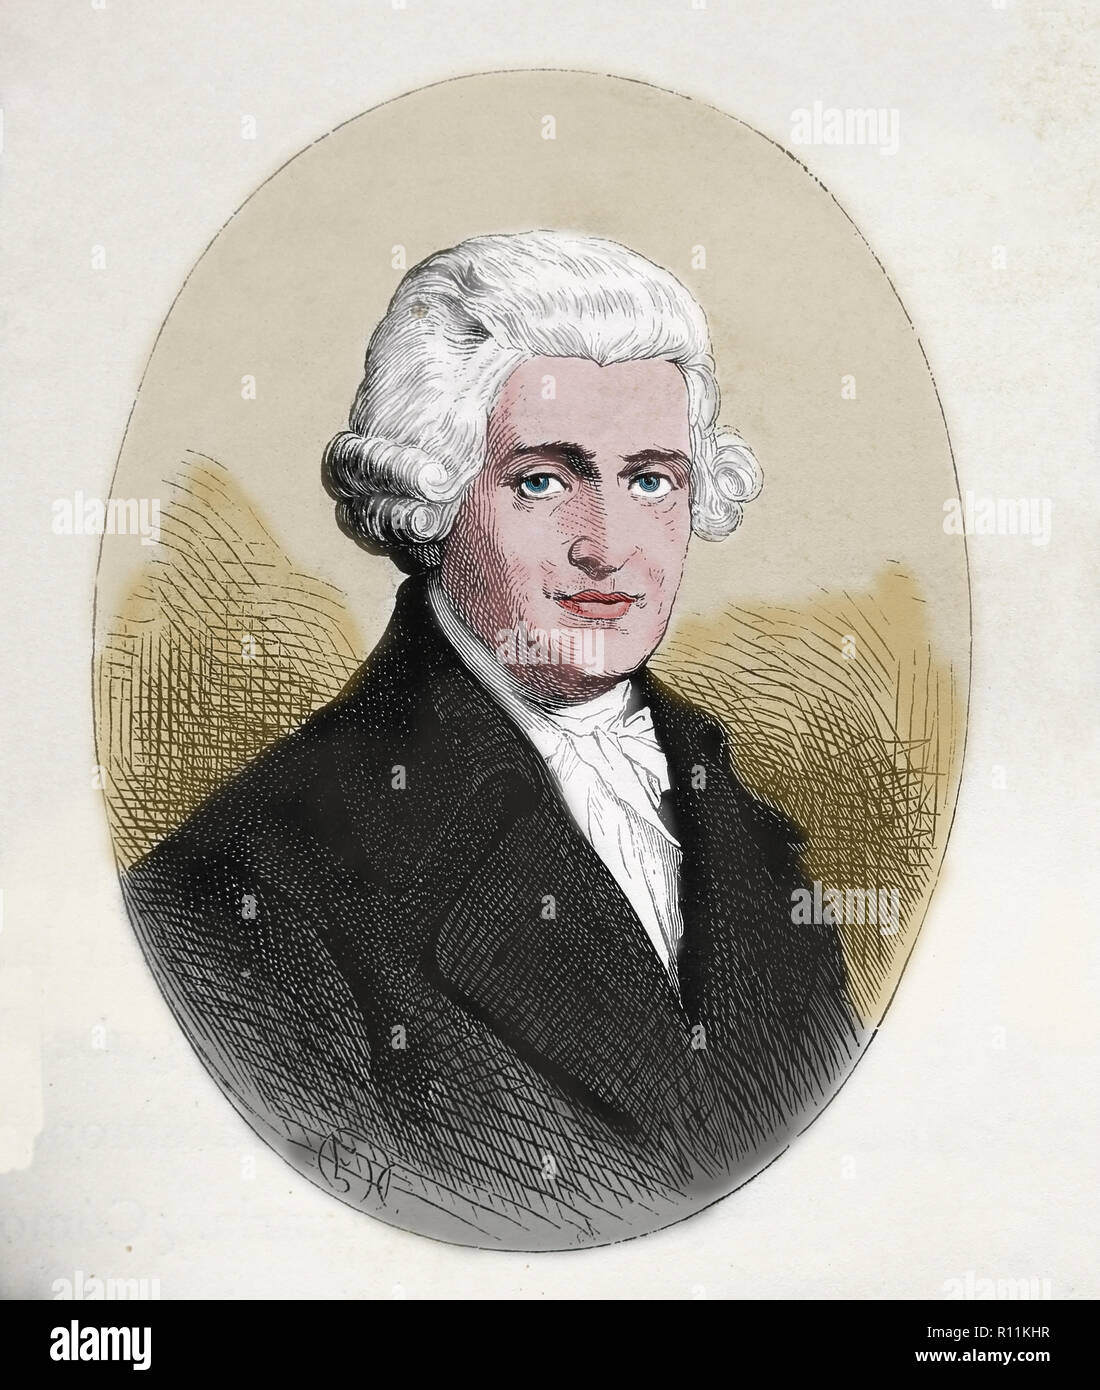 Joseph Haydn (1732-1809). Compositeur autrichien de la période classique. Gravure de Germania, 1882. Banque D'Images